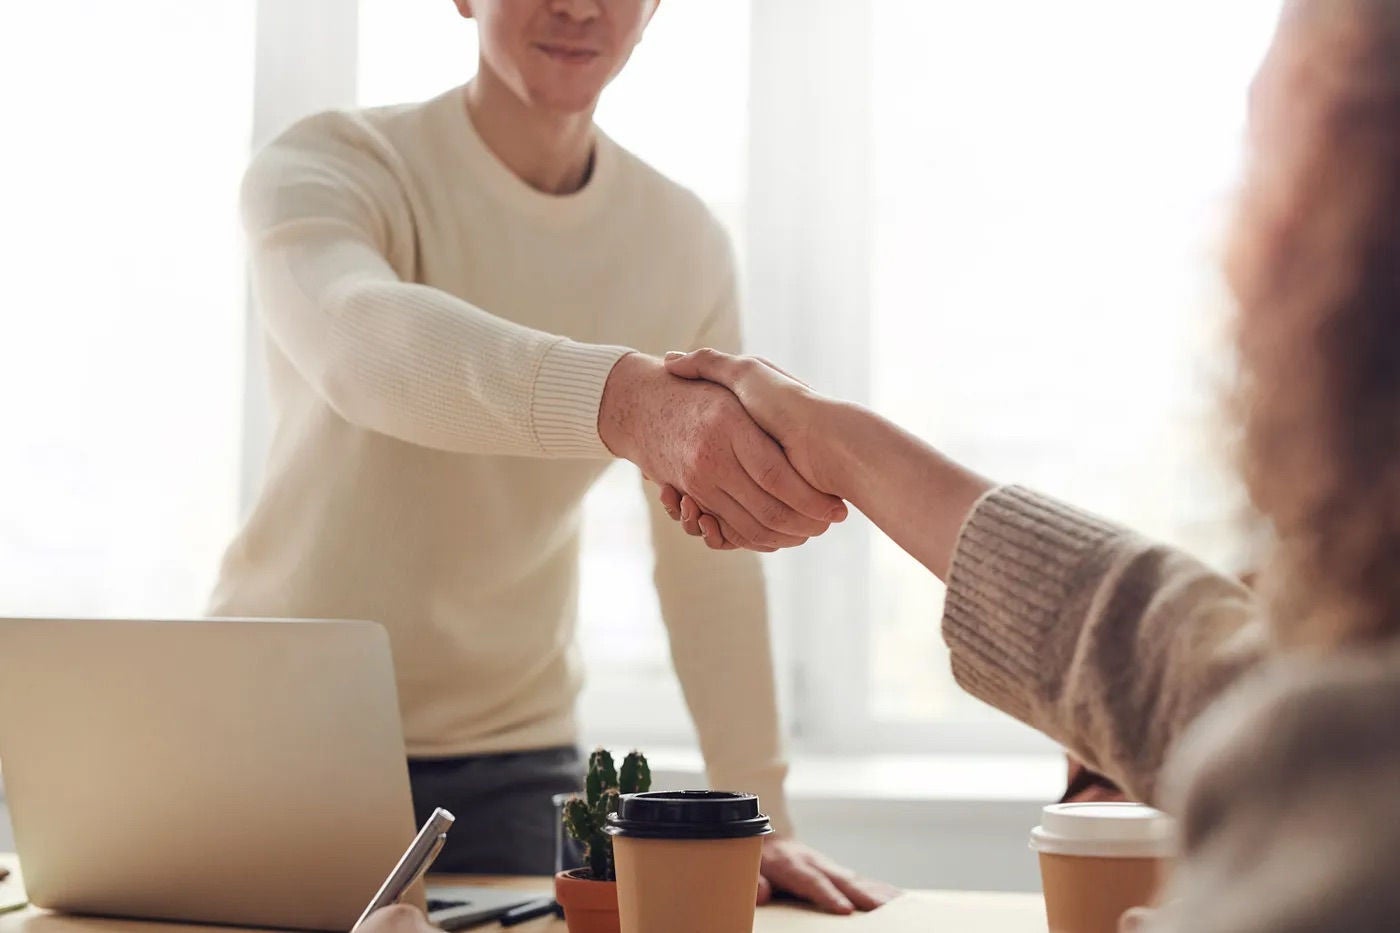 Handshake in a meeting between two people. 